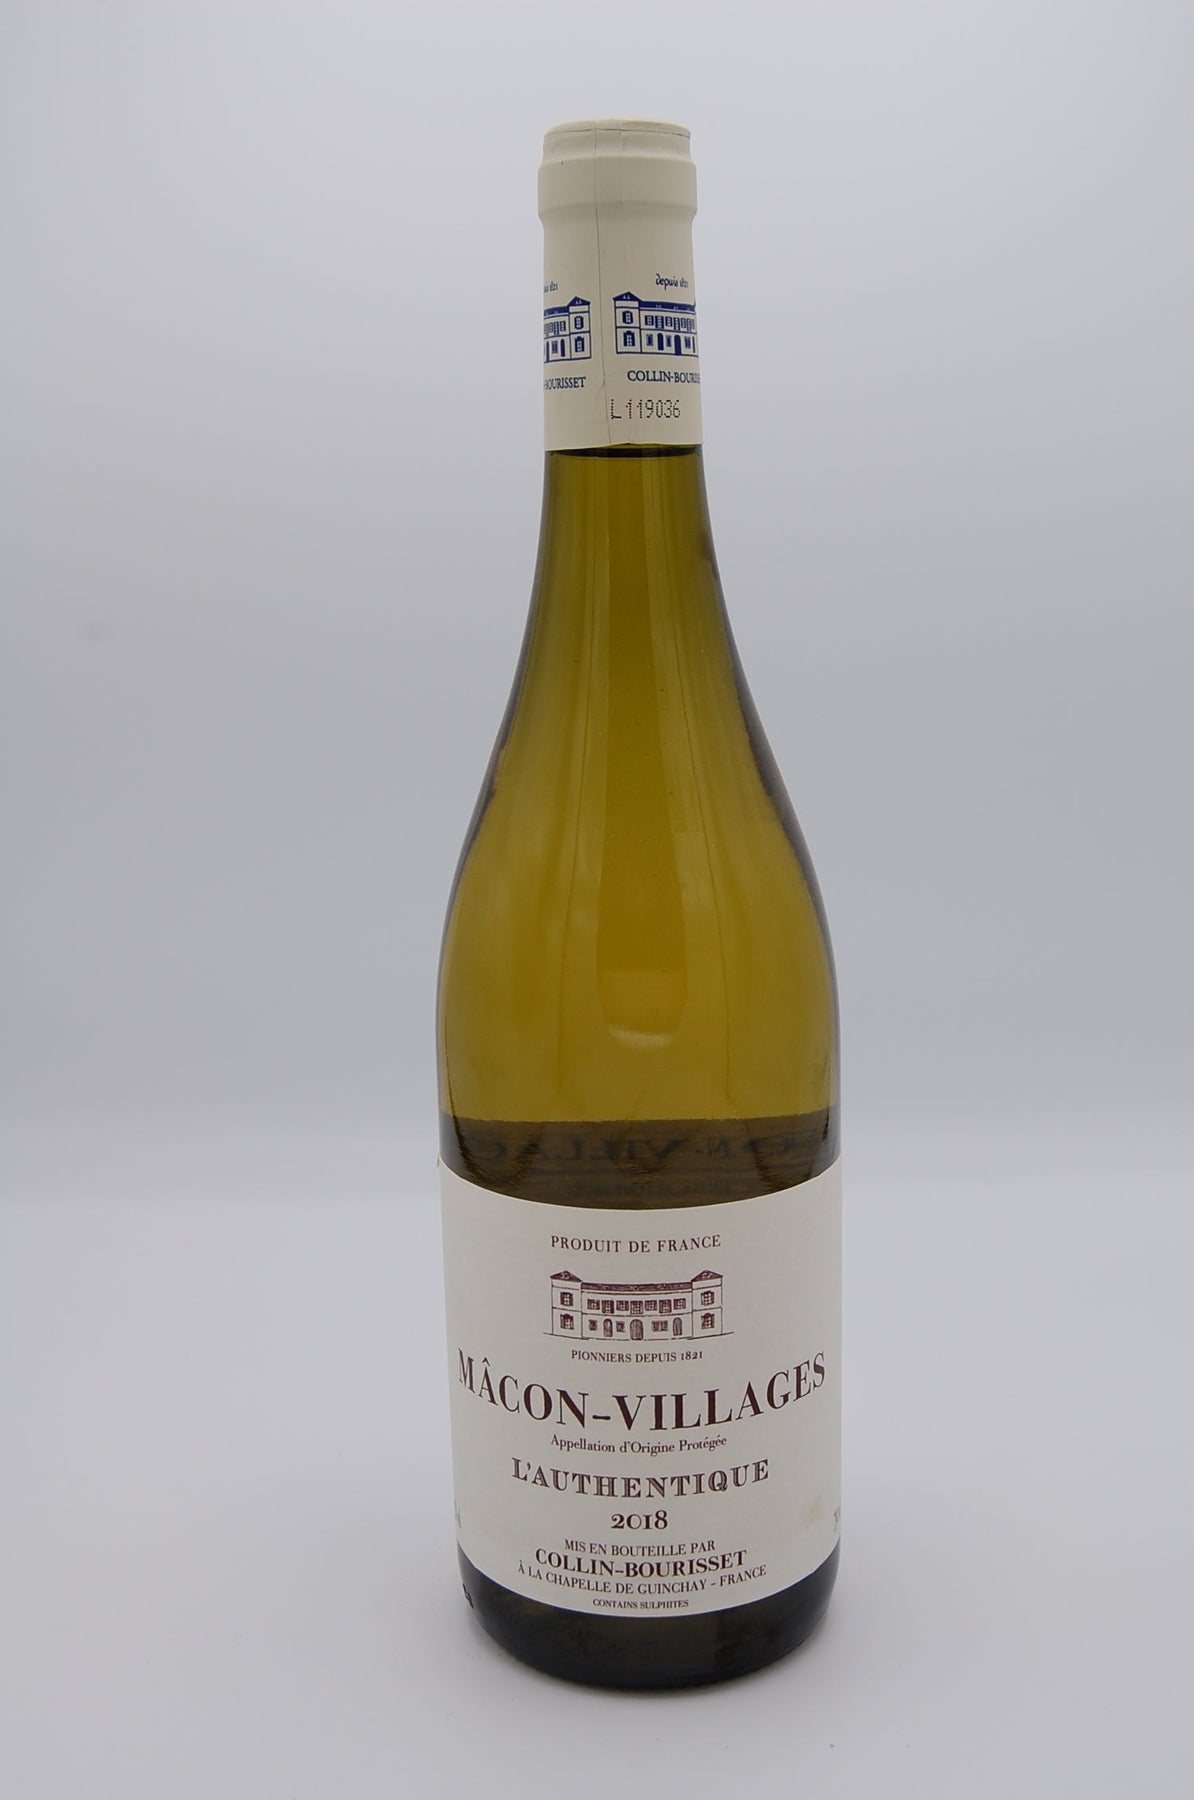 Macon Villages Blanc Collin Bourisset – wine-boutique